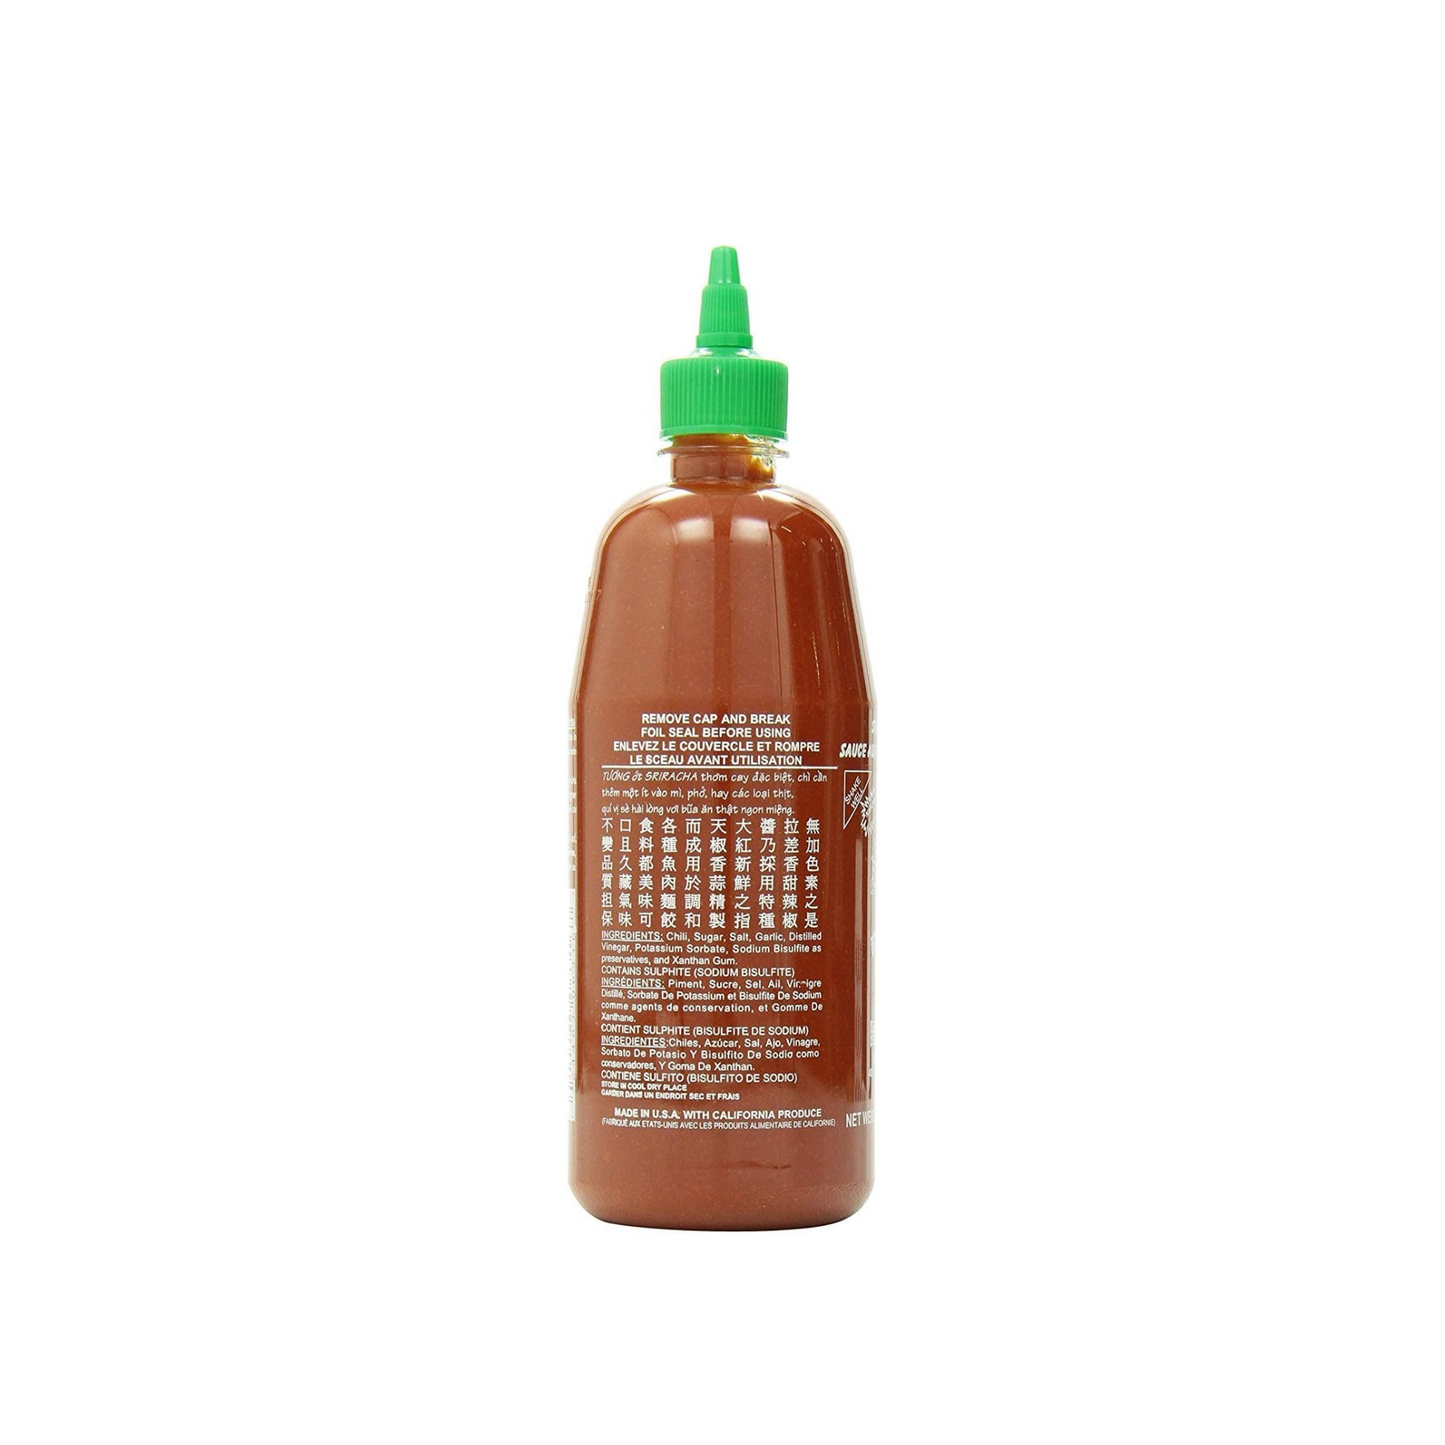 Sriracha Hot Chilli Sauce, 714ml